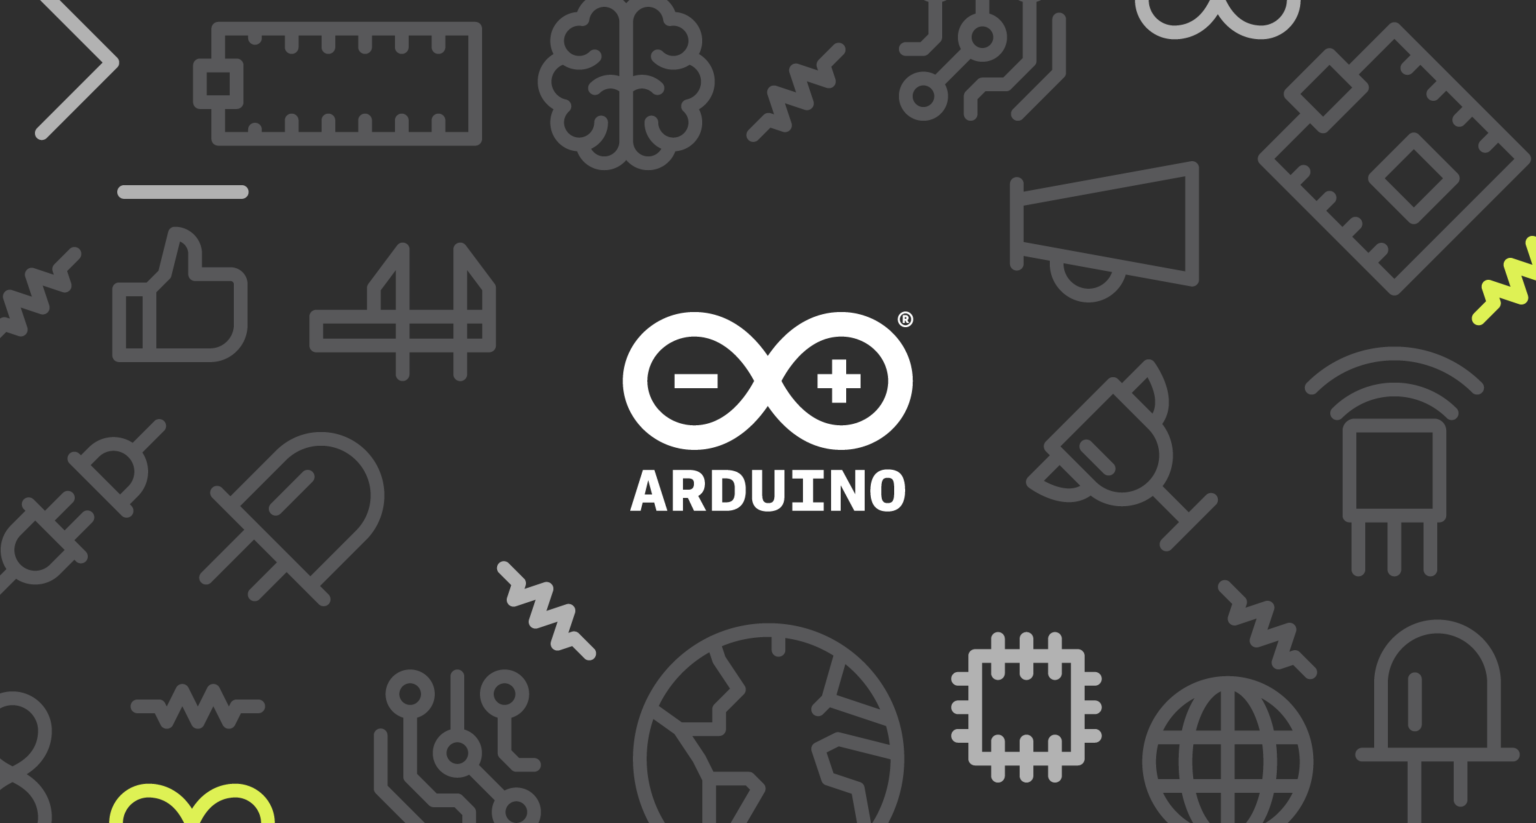 Arduino Schematics Wallpaper